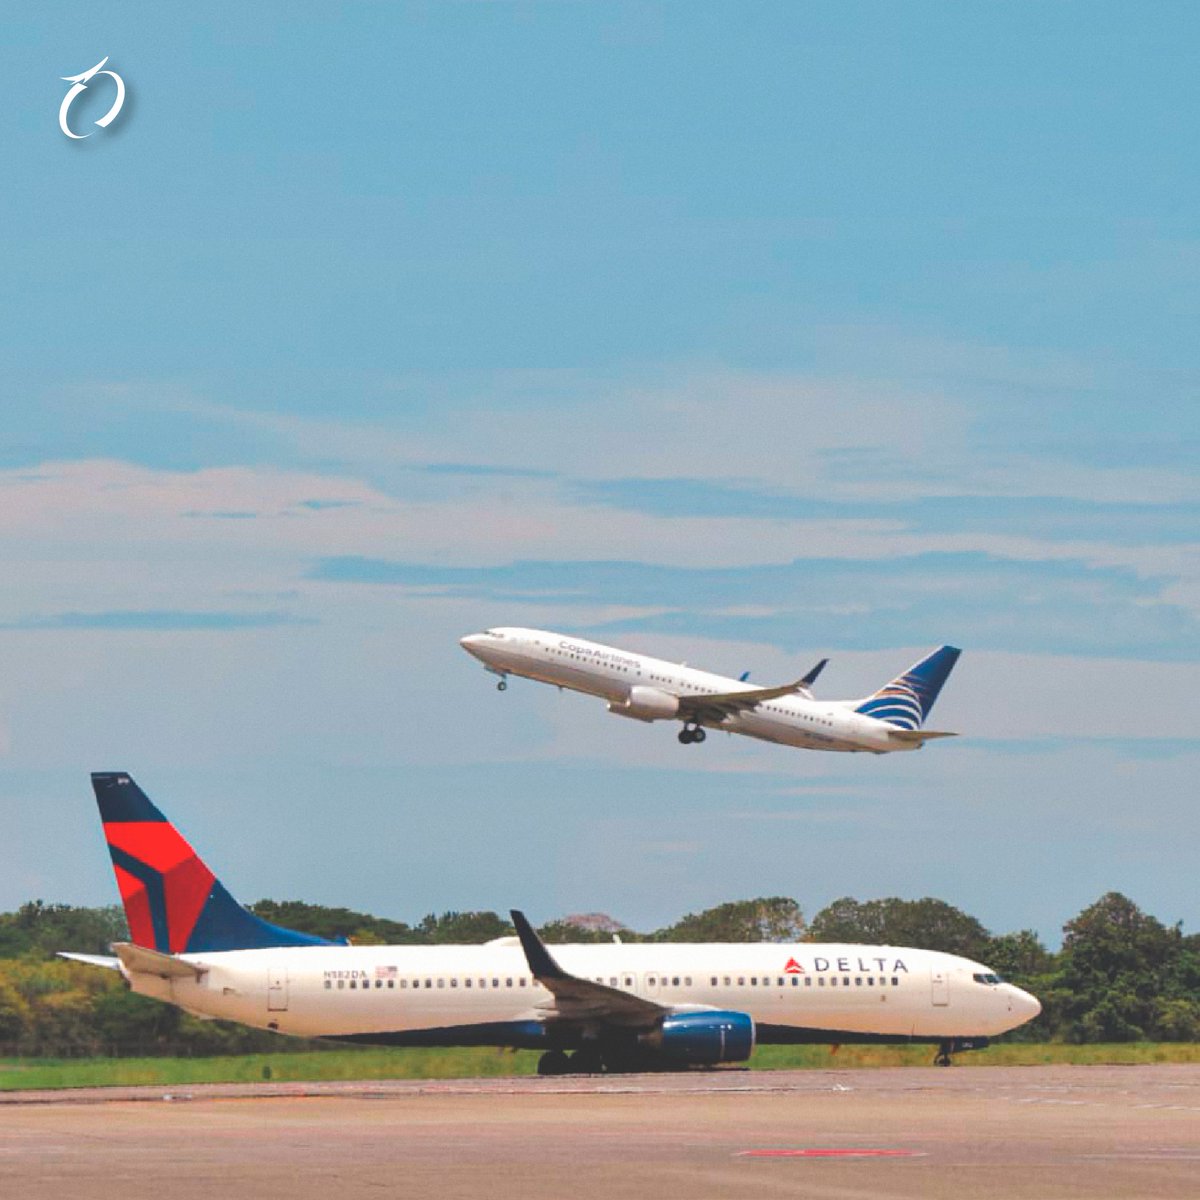 Una mañana en @tocumenaero ✈️ dos increíbles aviones de @delta y @CopaAirlines.

¡Les deseamos un excelente inicio de semana! 🤩

#LaPuertaDeLasAméricas
#AeropuertoDeTocumen
#CambiamosPorTi